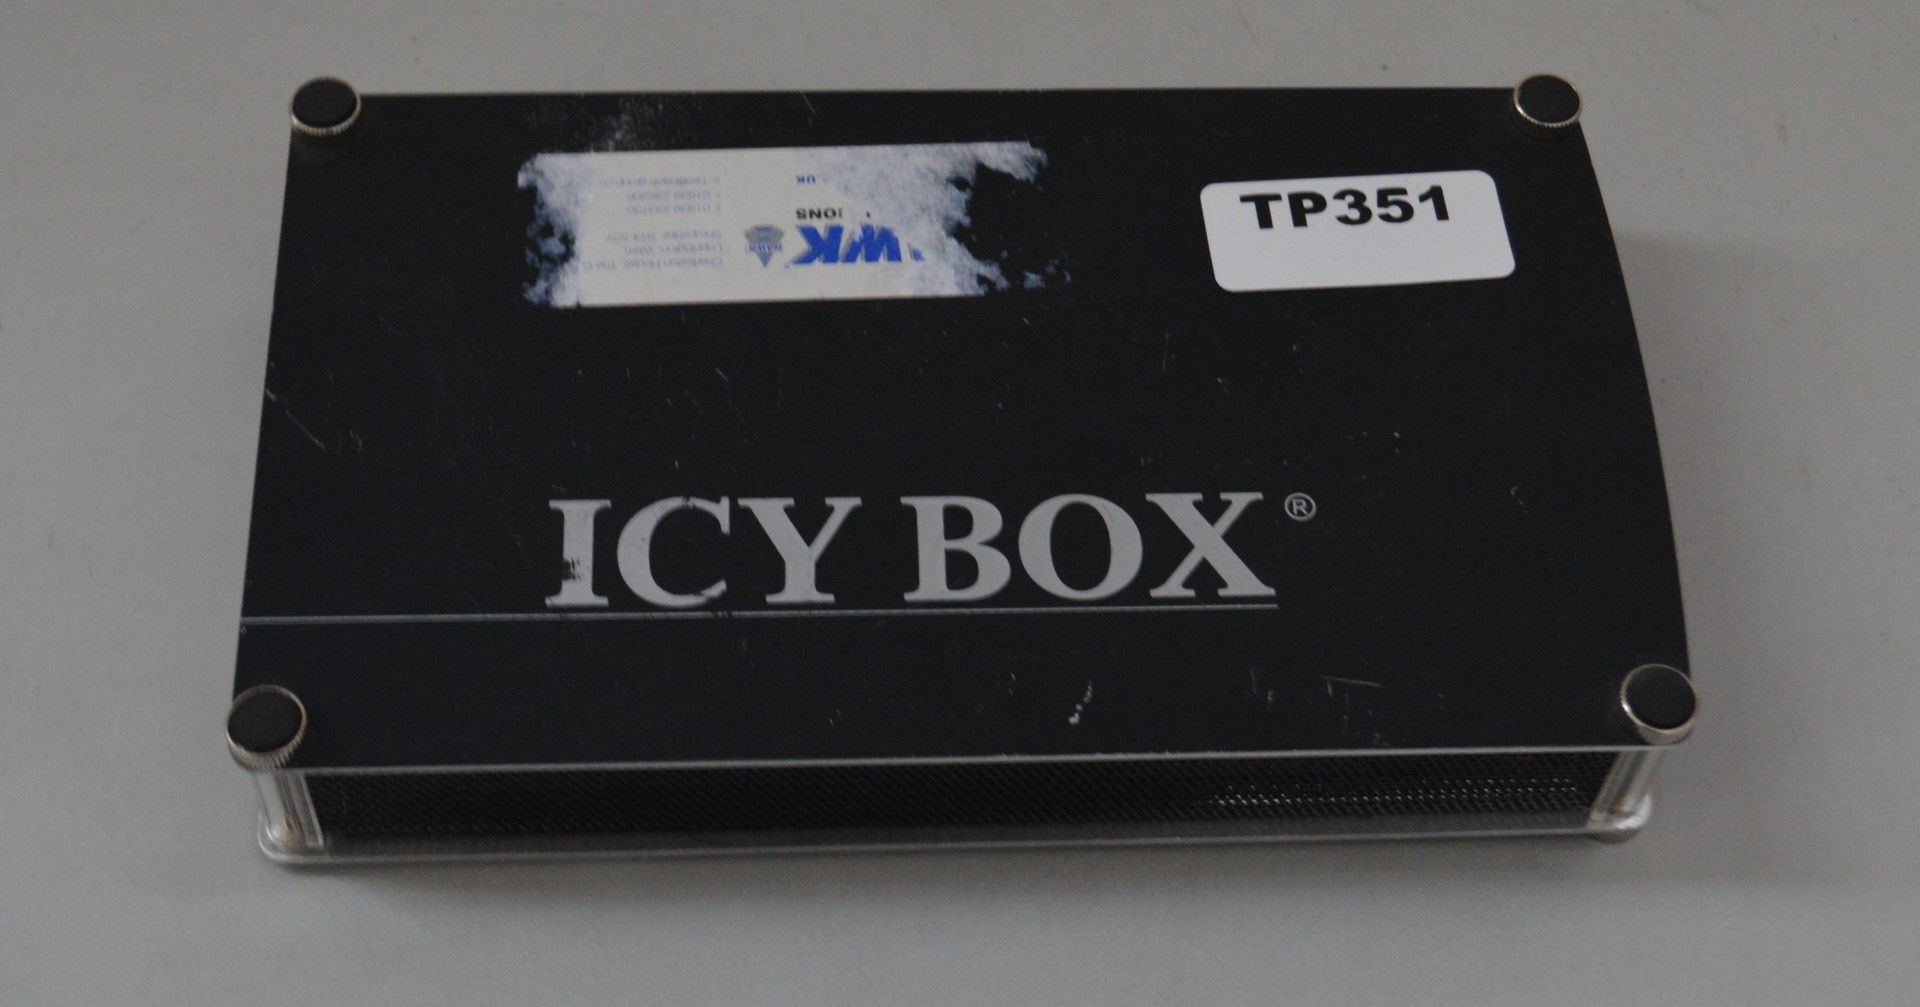 1 x ICY BOX IB-351U-B Black HD 3.5" IDE Enclosure - Ref TP351